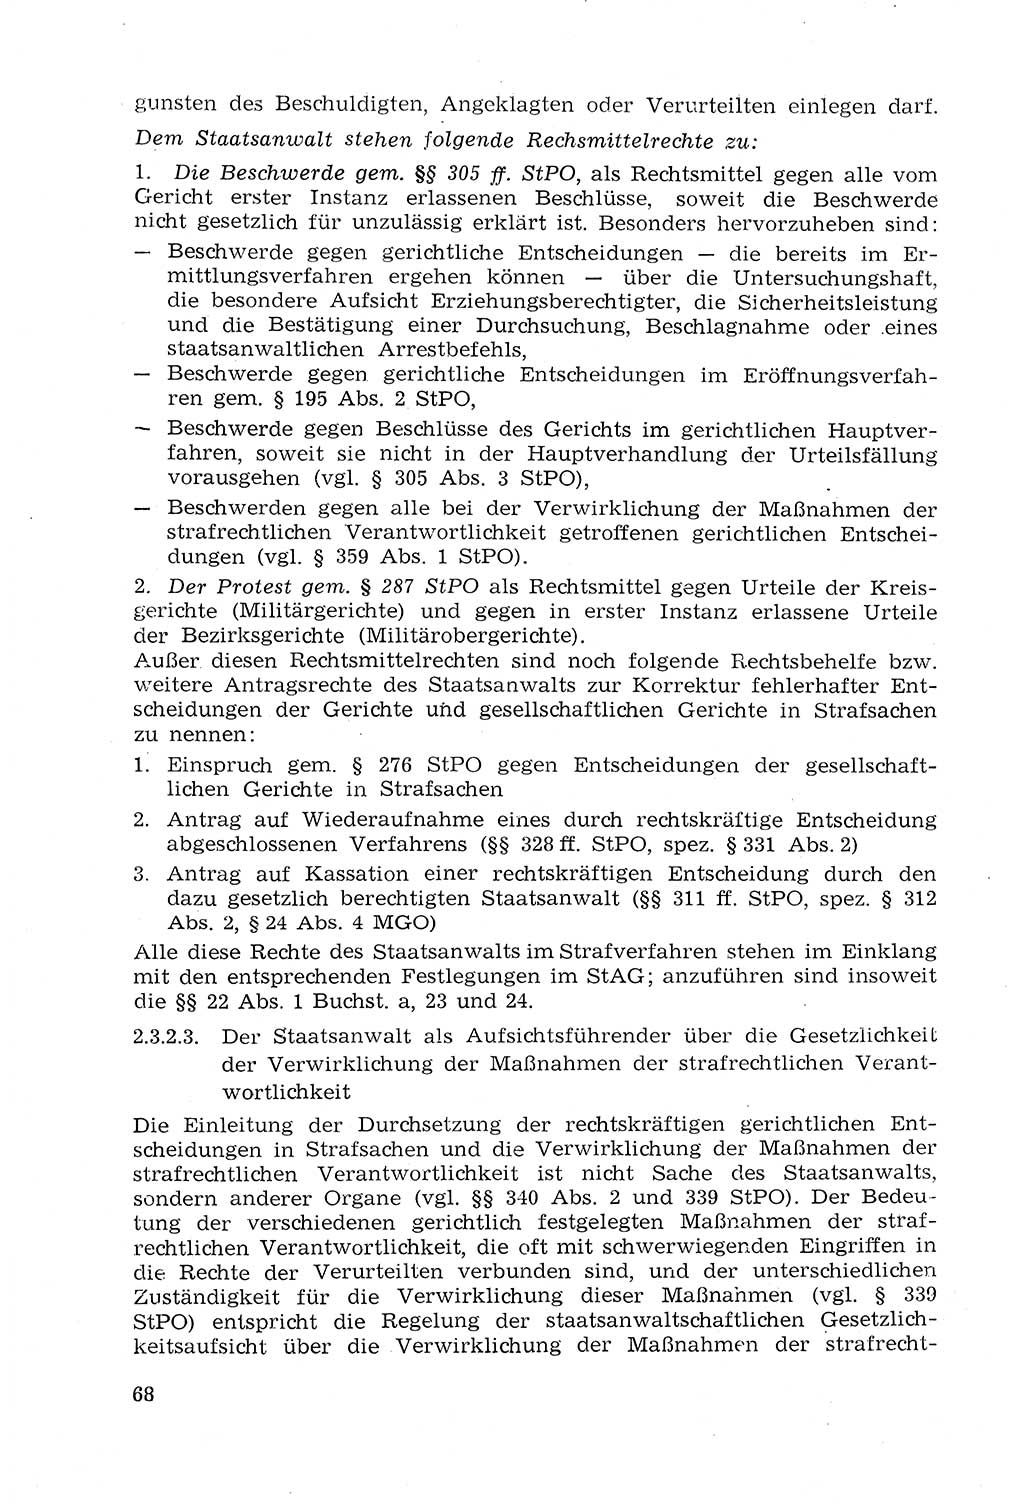 Strafprozeßrecht der DDR (Deutsche Demokratische Republik), Lehrmaterial 1969, Seite 68 (Strafprozeßr. DDR Lehrmat. 1969, S. 68)